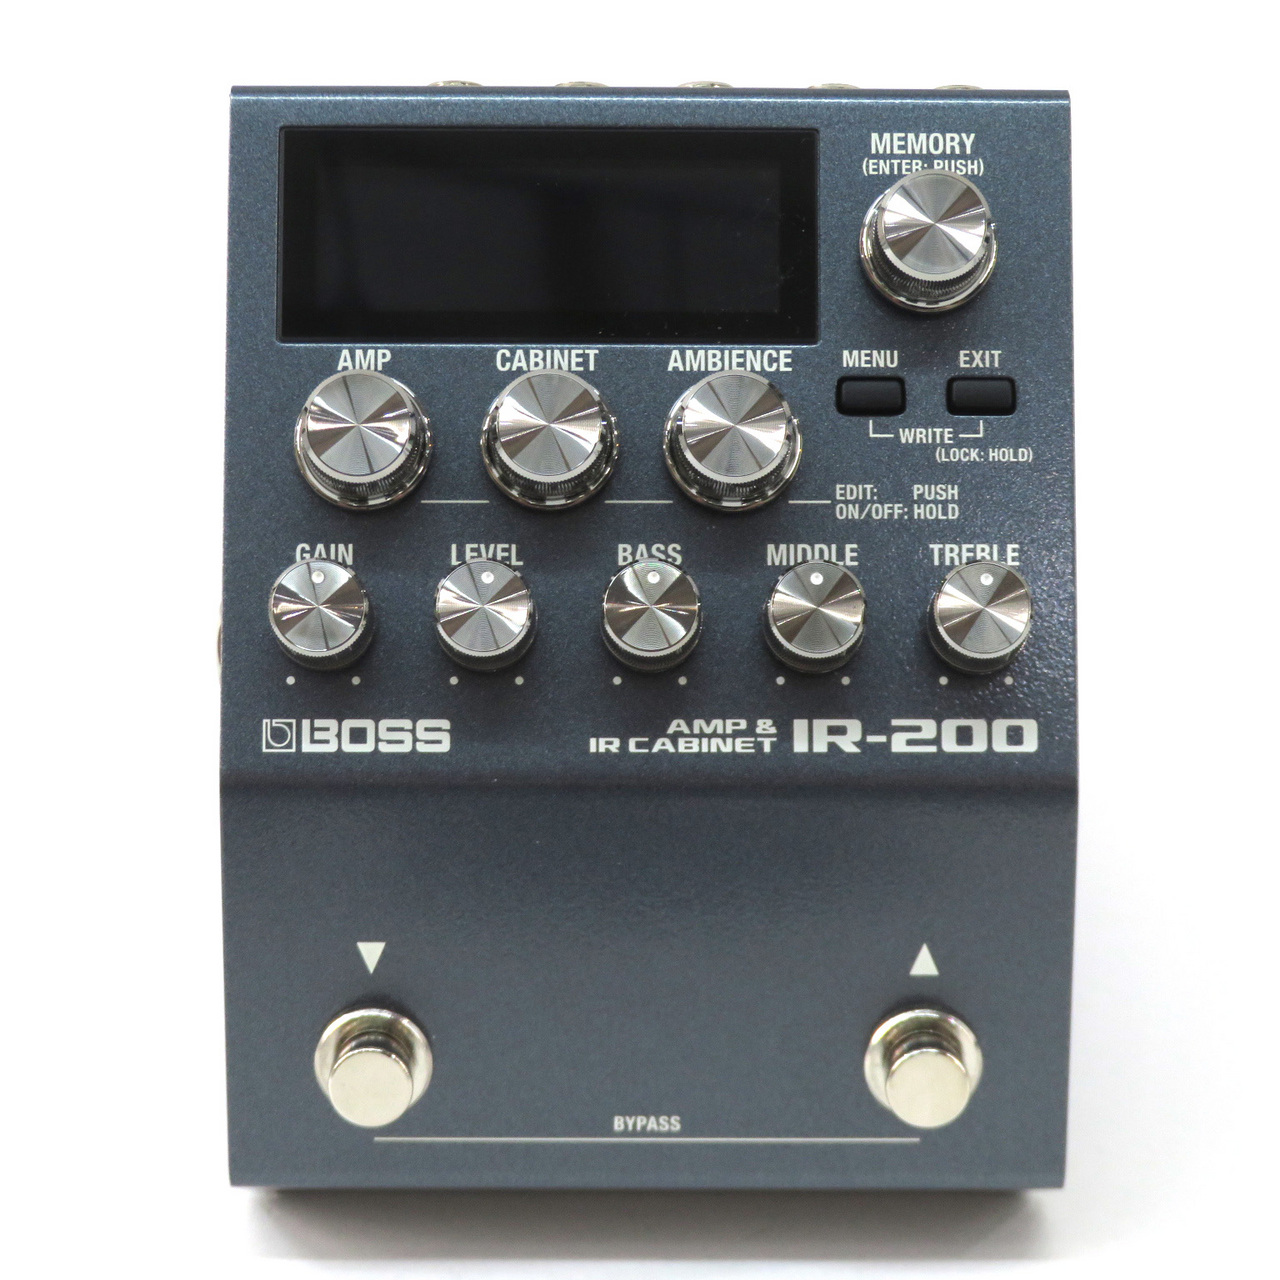 楽器・機材BOSS IR-200 AMP\u0026IR CABINET アンプシミュレータ 美品